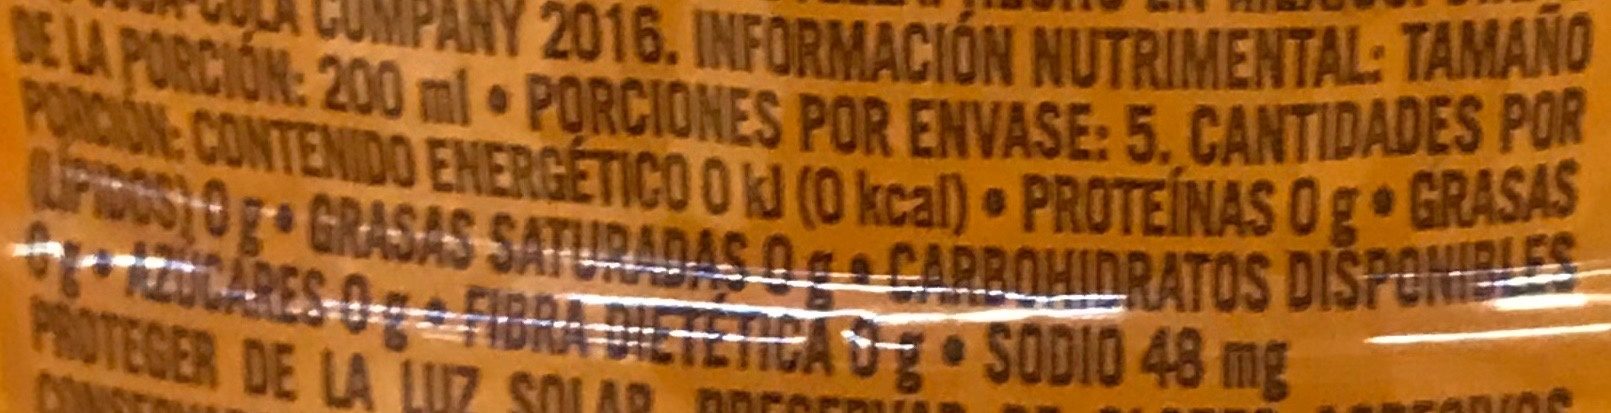 Ciel Exprim sabor Mandarina con Gajos - Nutrition facts - es